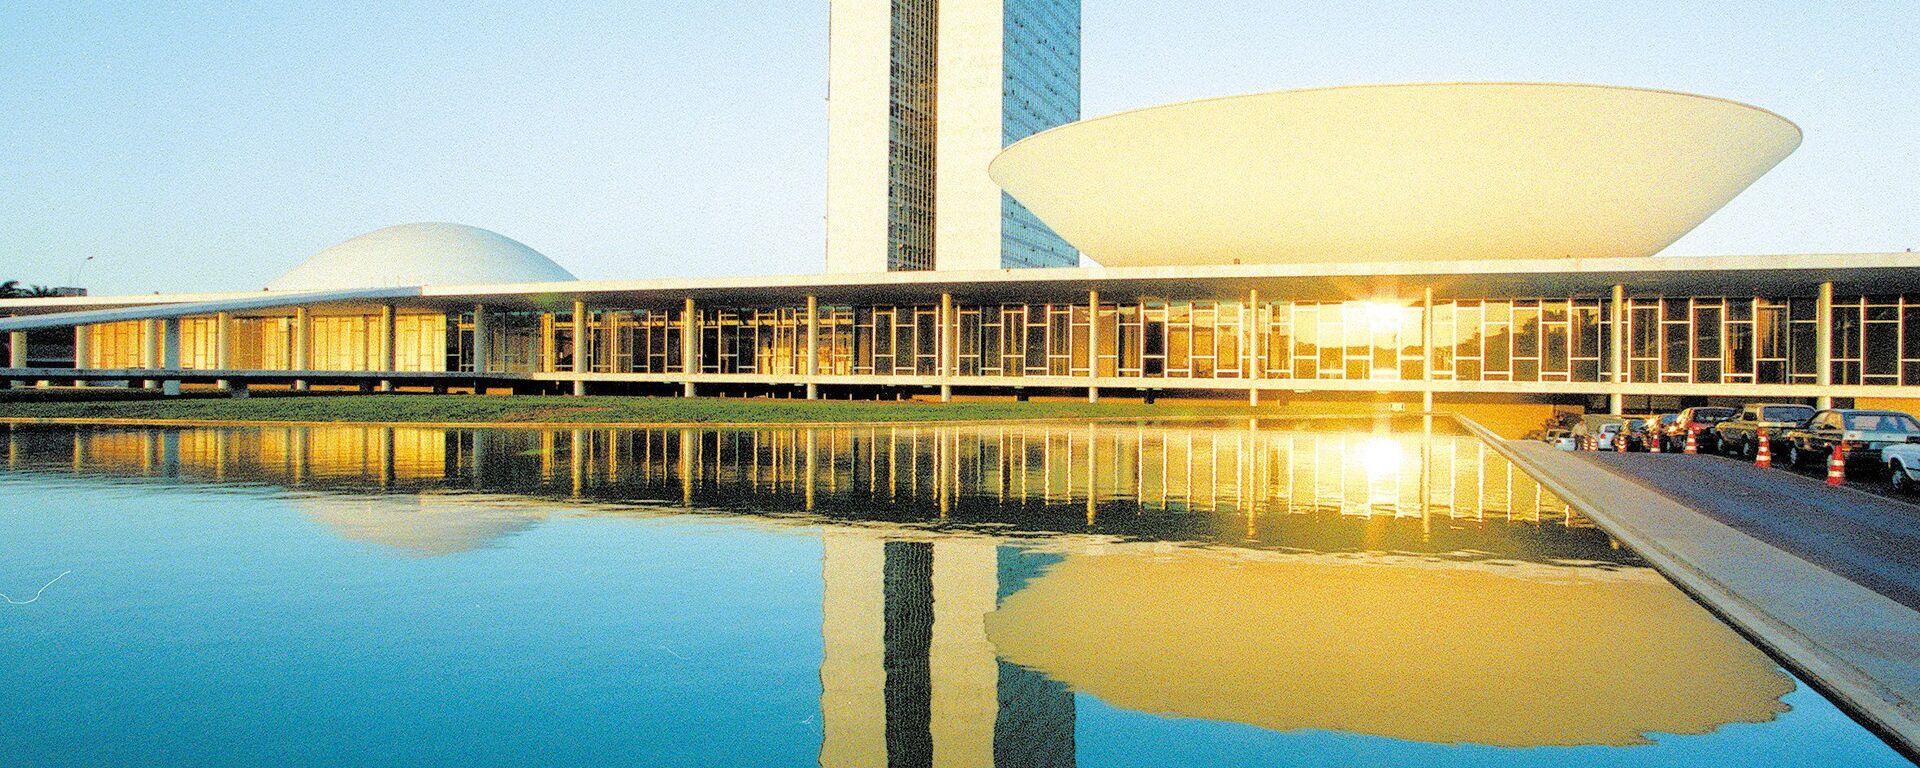 Fachada do prédio do Congresso Nacional, em Brasília (DF) - Sputnik Brasil, 1920, 29.12.2019